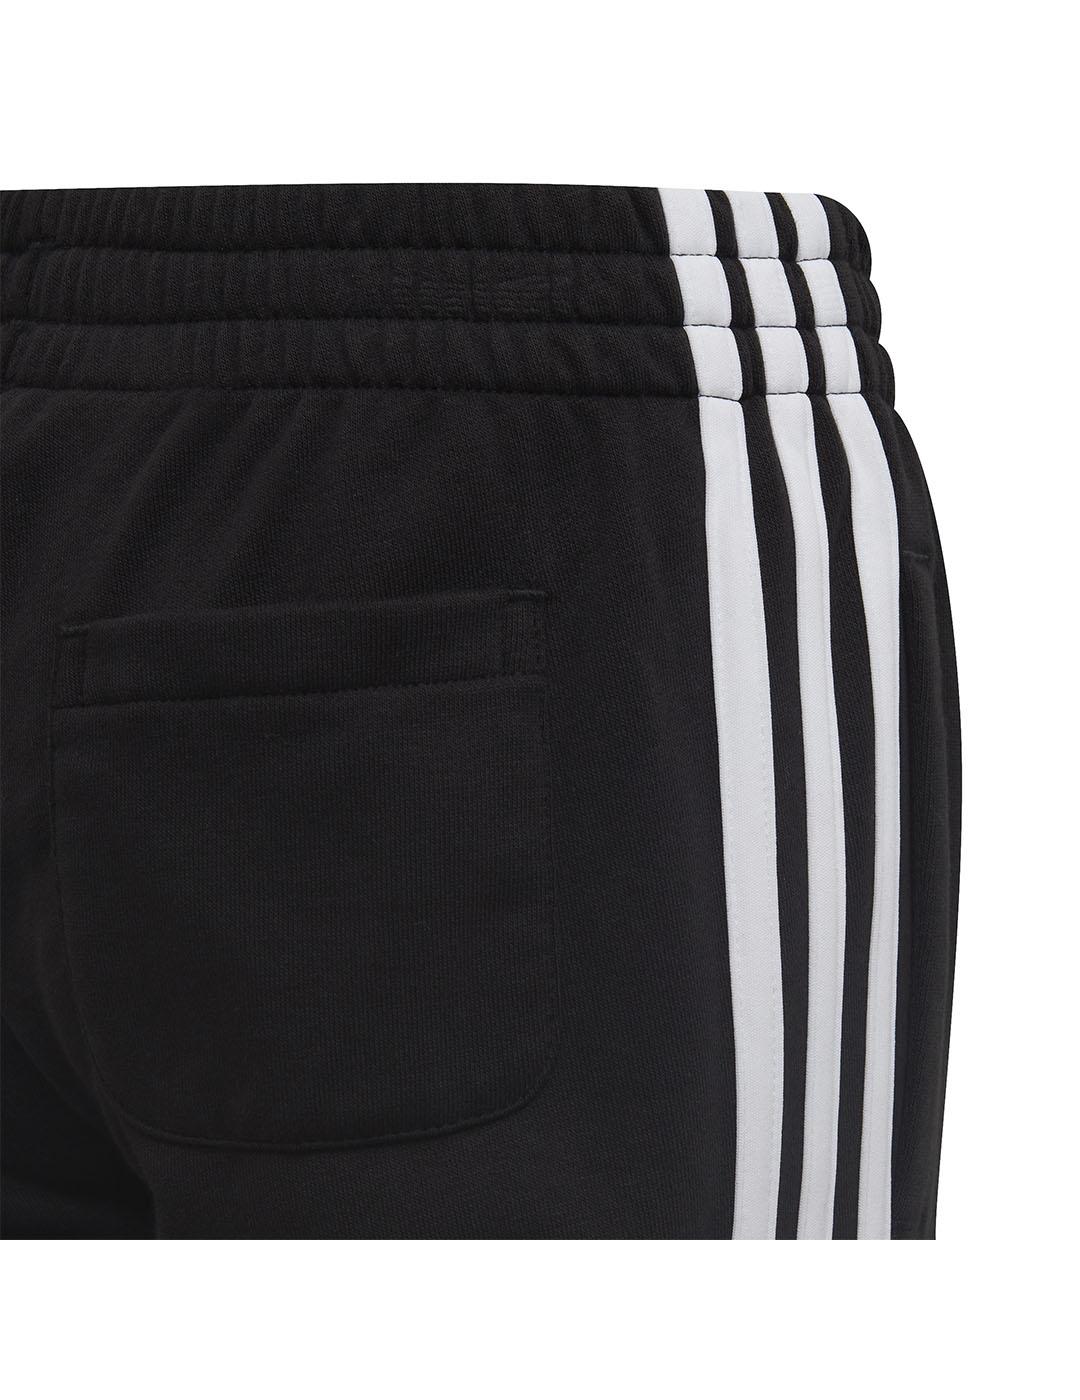 Pantalón Niño adidas 3 Stripe Negro